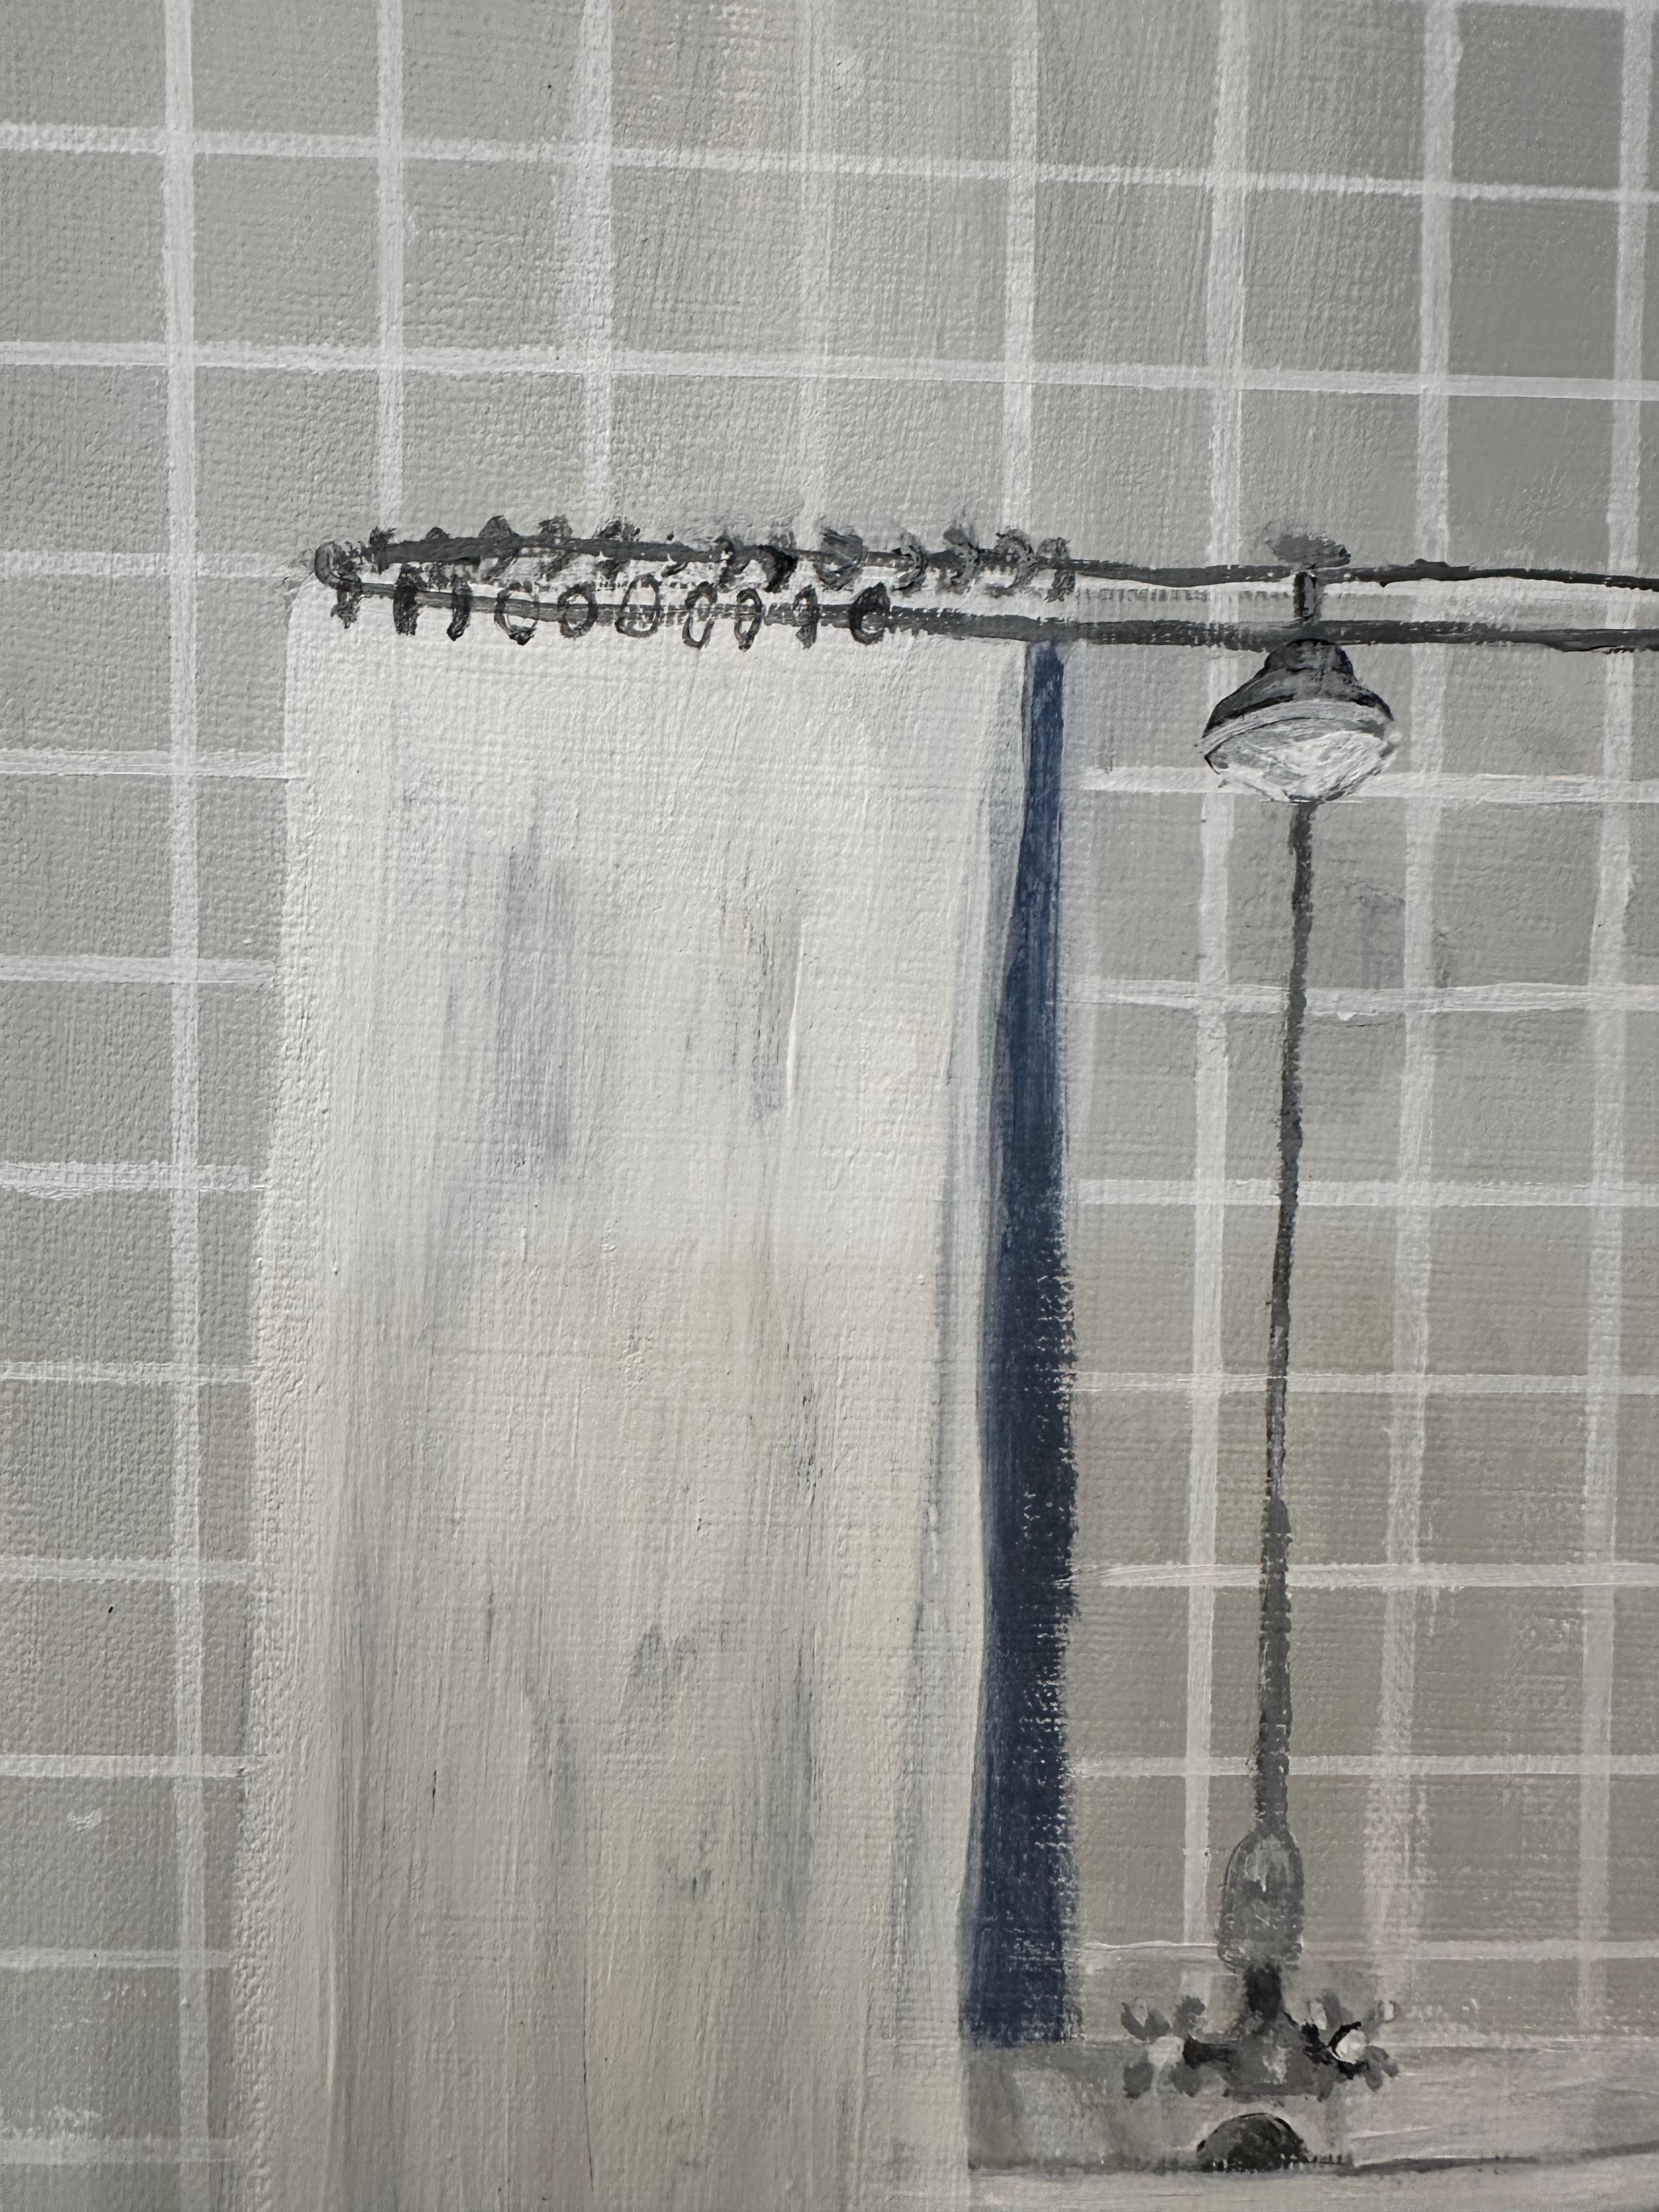 In einem grau gefliesten Badezimmer steht eine Krallenfußwanne mit weißem Duschvorhang neben einem kobaltblauen Badvorleger.

In ihrer Arbeit denkt Polly Shindler stets über die Psychologie eines Ortes nach. Die Ideen, die aus einer Untersuchung der